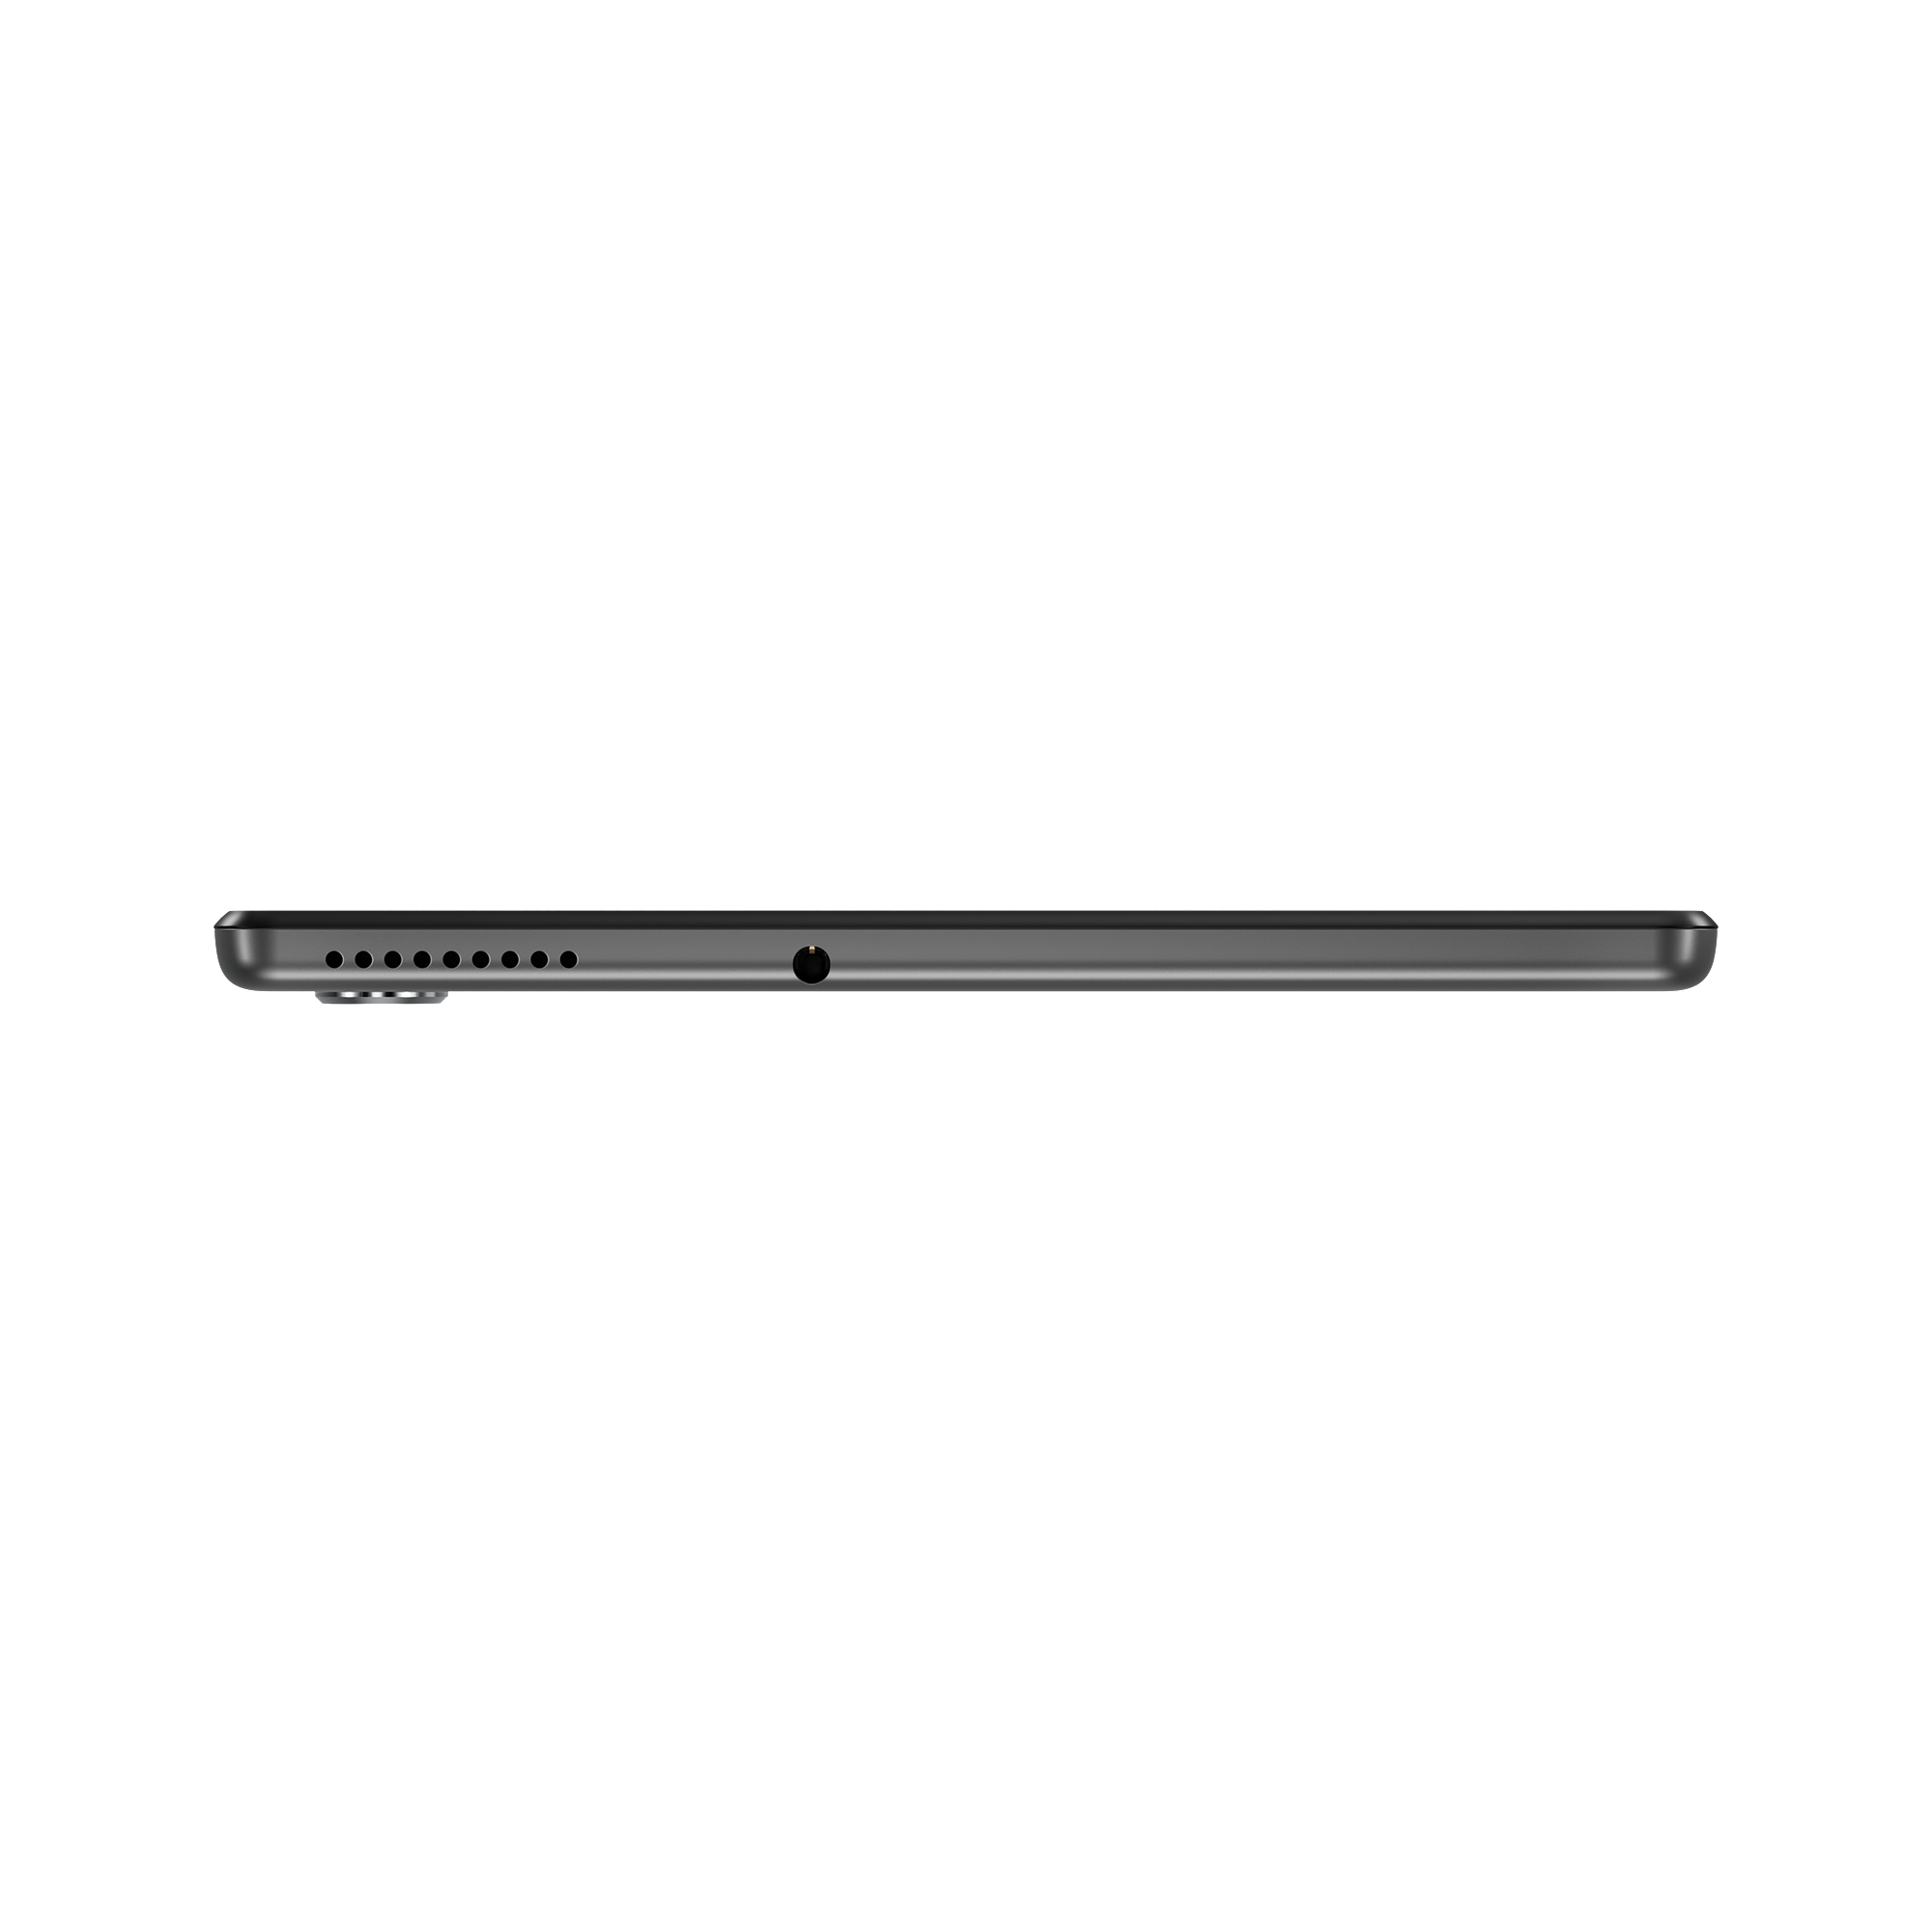 LENOVO Tab M10 FHD Plus, Zoll, Tablet, Iron Grey GB, 10,3 128